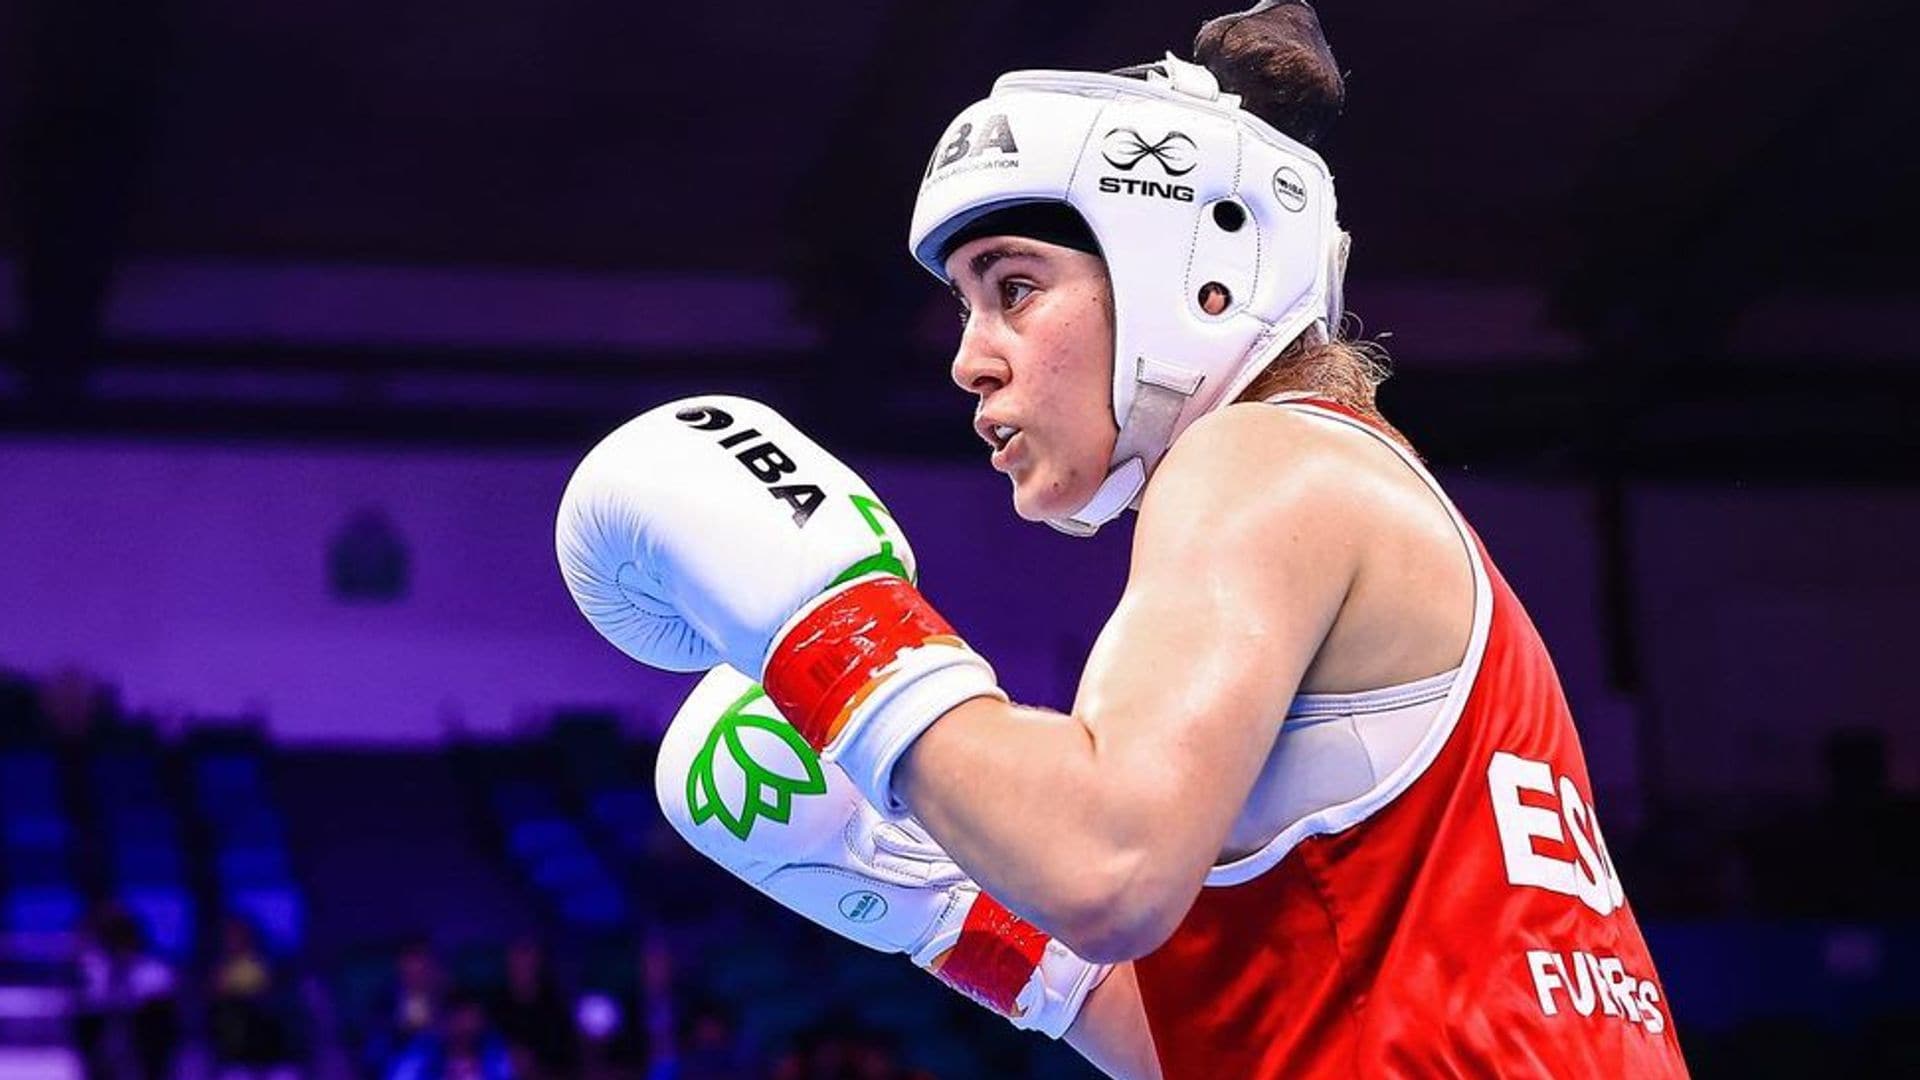 Hablamos con Laura Fuertes, la primera boxeadora española en unos Juegos Olímpicos que descubrió su pasión por una oferta 3x1